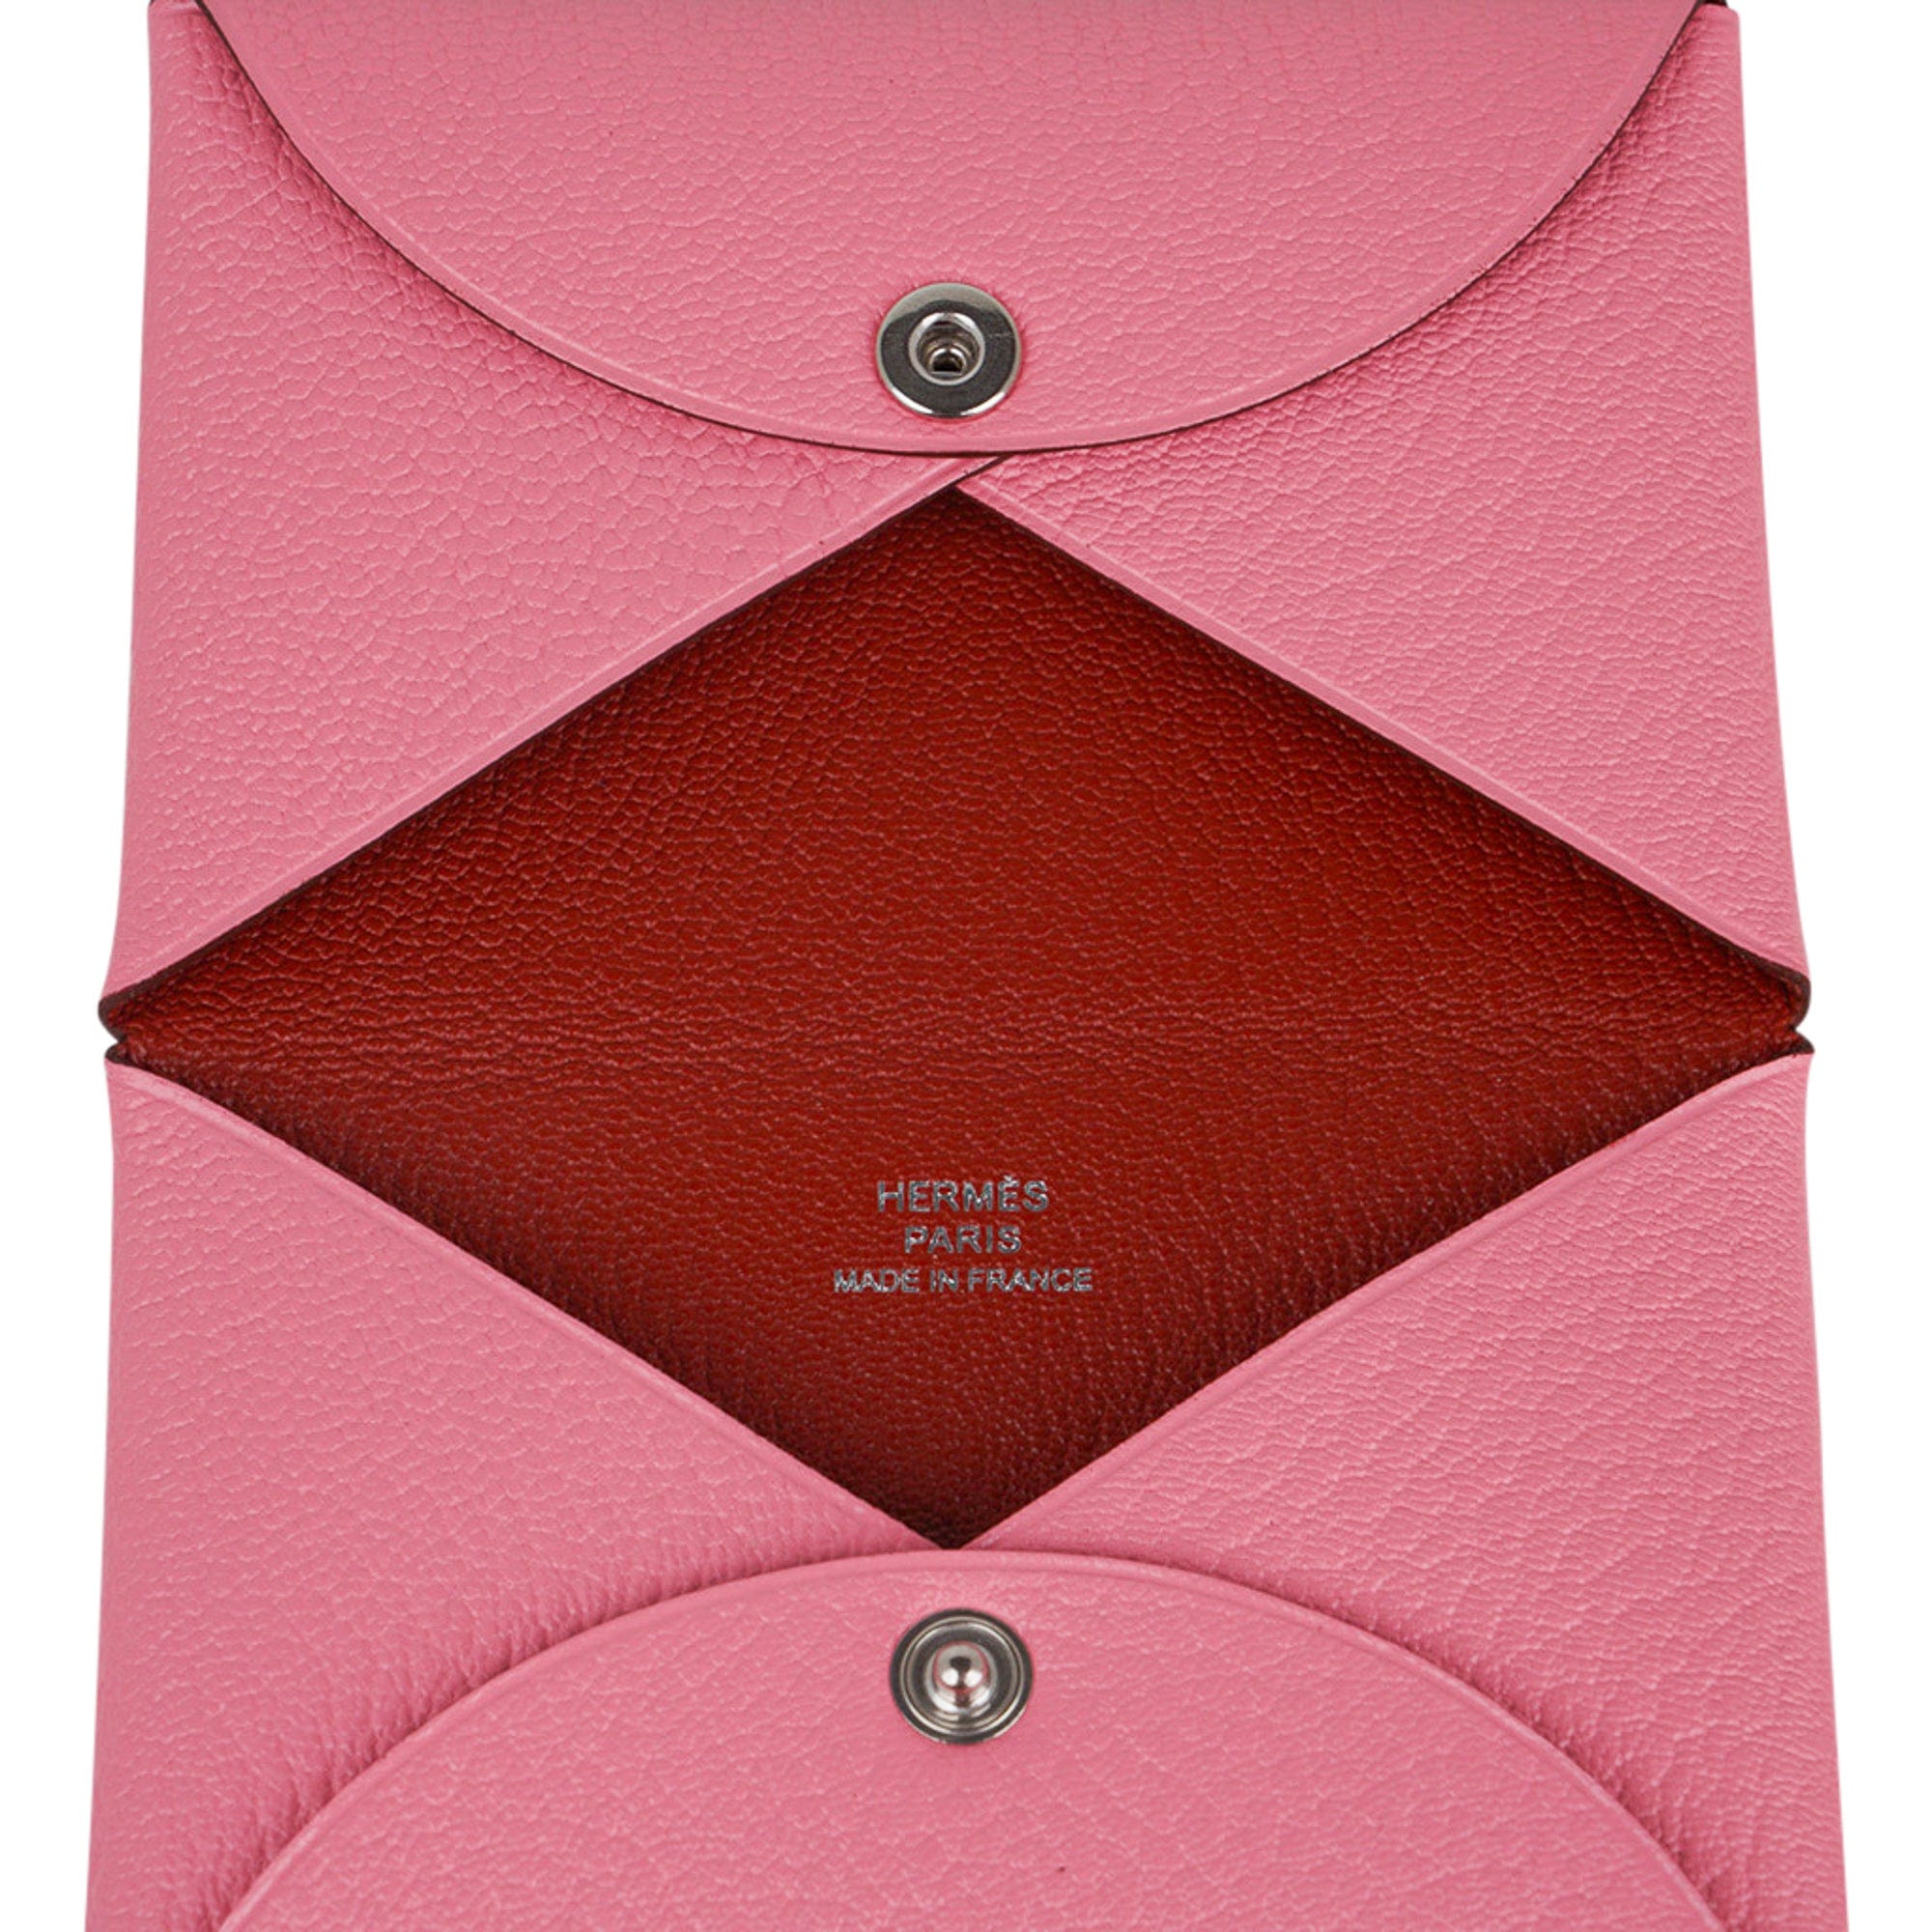 Hermes Calvi Verso Card Holder Colors Rouge Piment / Rouge De Coeur